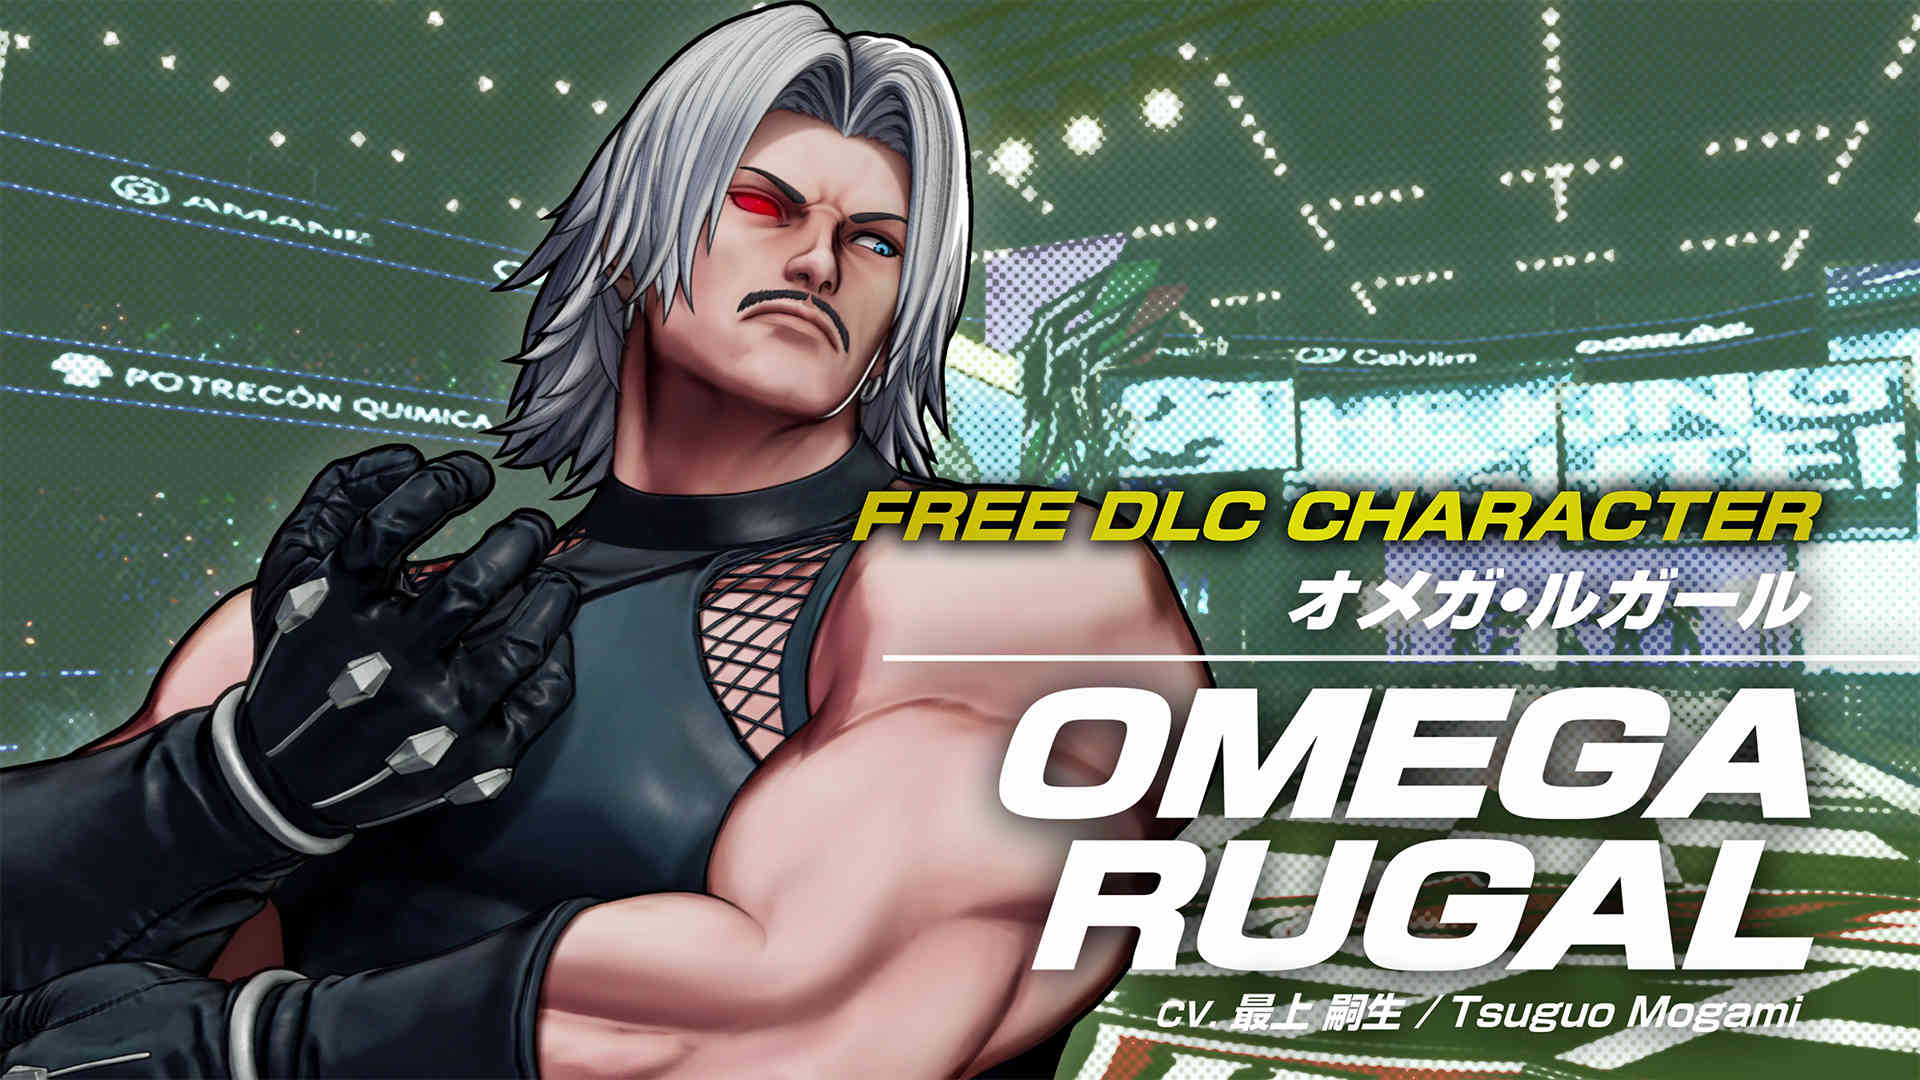 《拳皇15》4月14日发布免费DLC角色卢卡尔 新增“BOSS挑战”模式